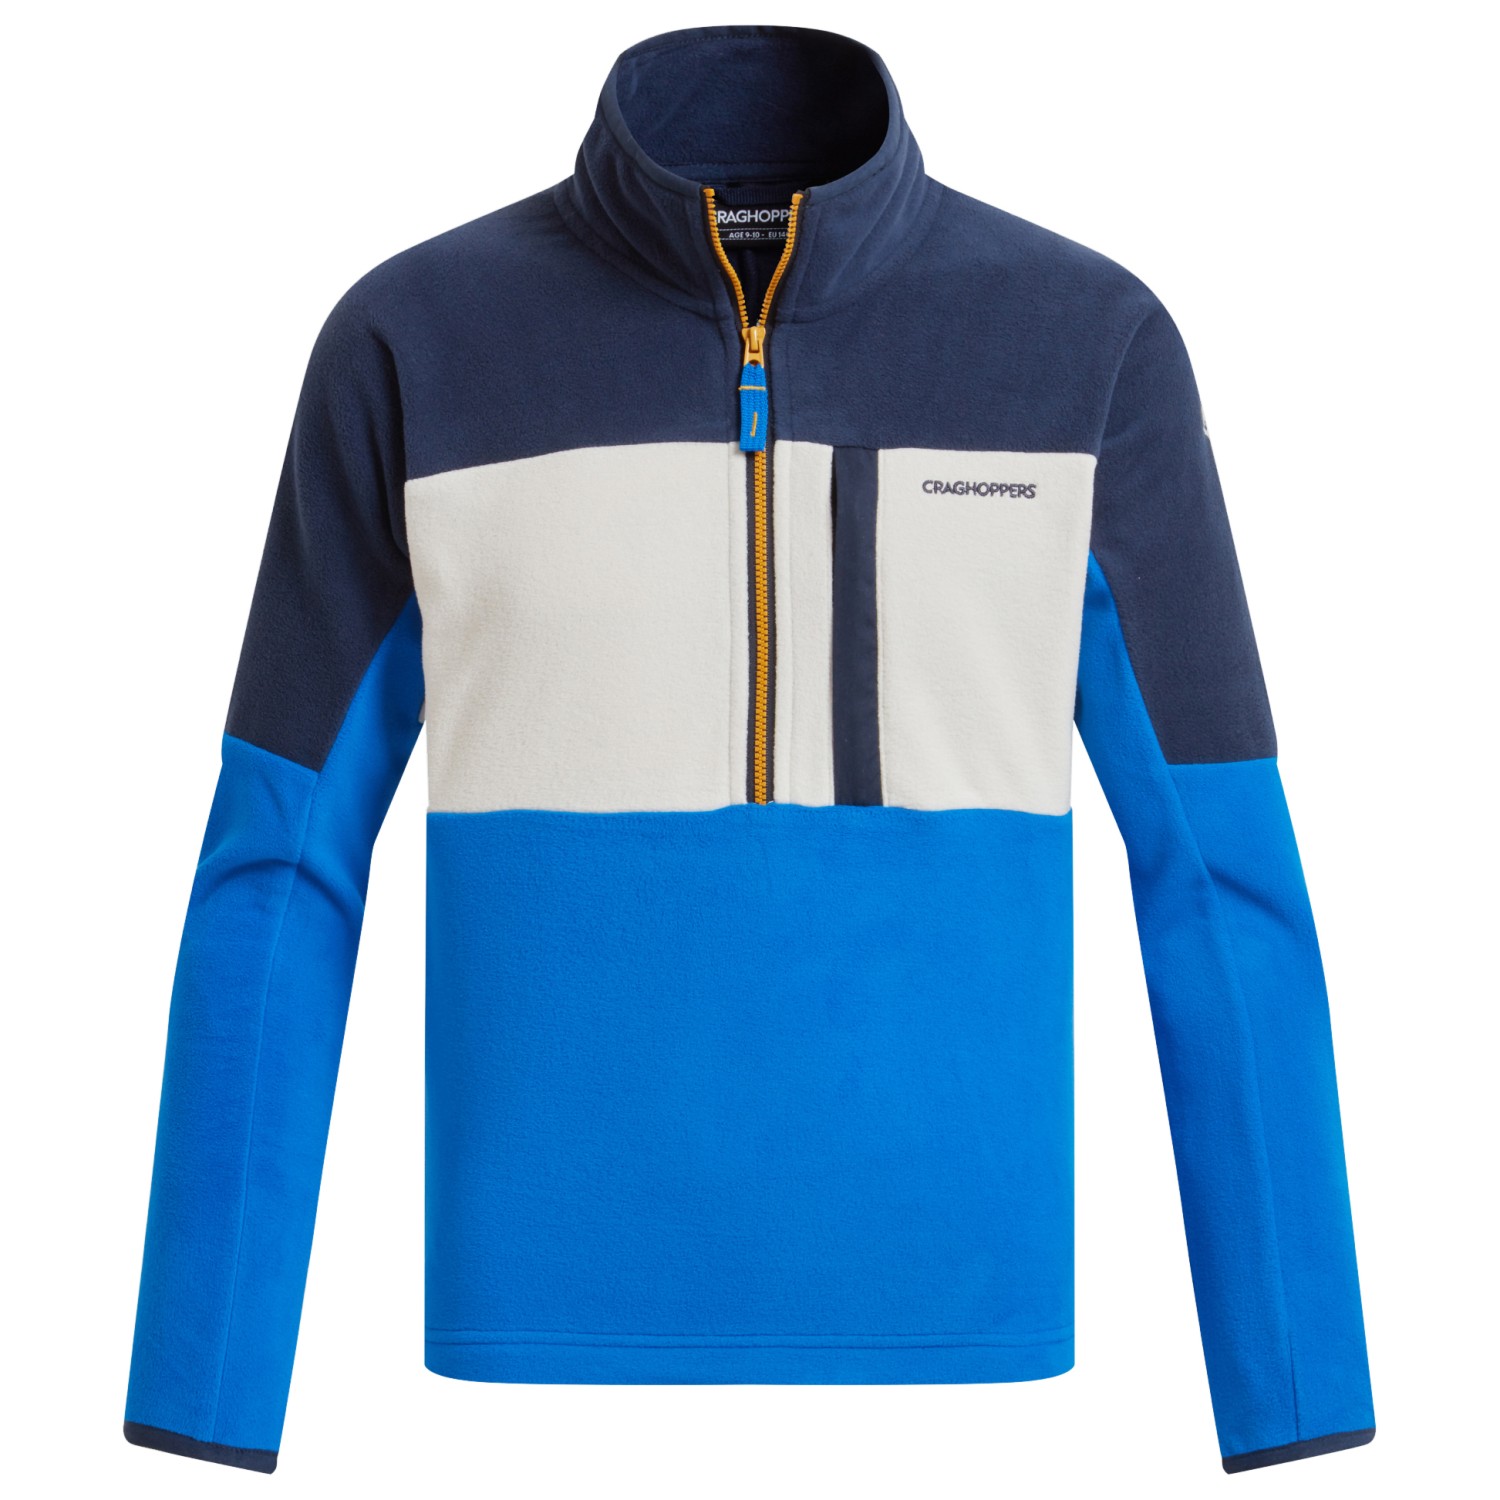 Флисовый свитер Craghoppers Kid's Bromley, цвет Blue Navy/Howlite Blue 100% норковый кашемировый свитер мужской пуловер осенне зимний базовый свободный флисовый повседневный модный трикотажный флисовый свитер